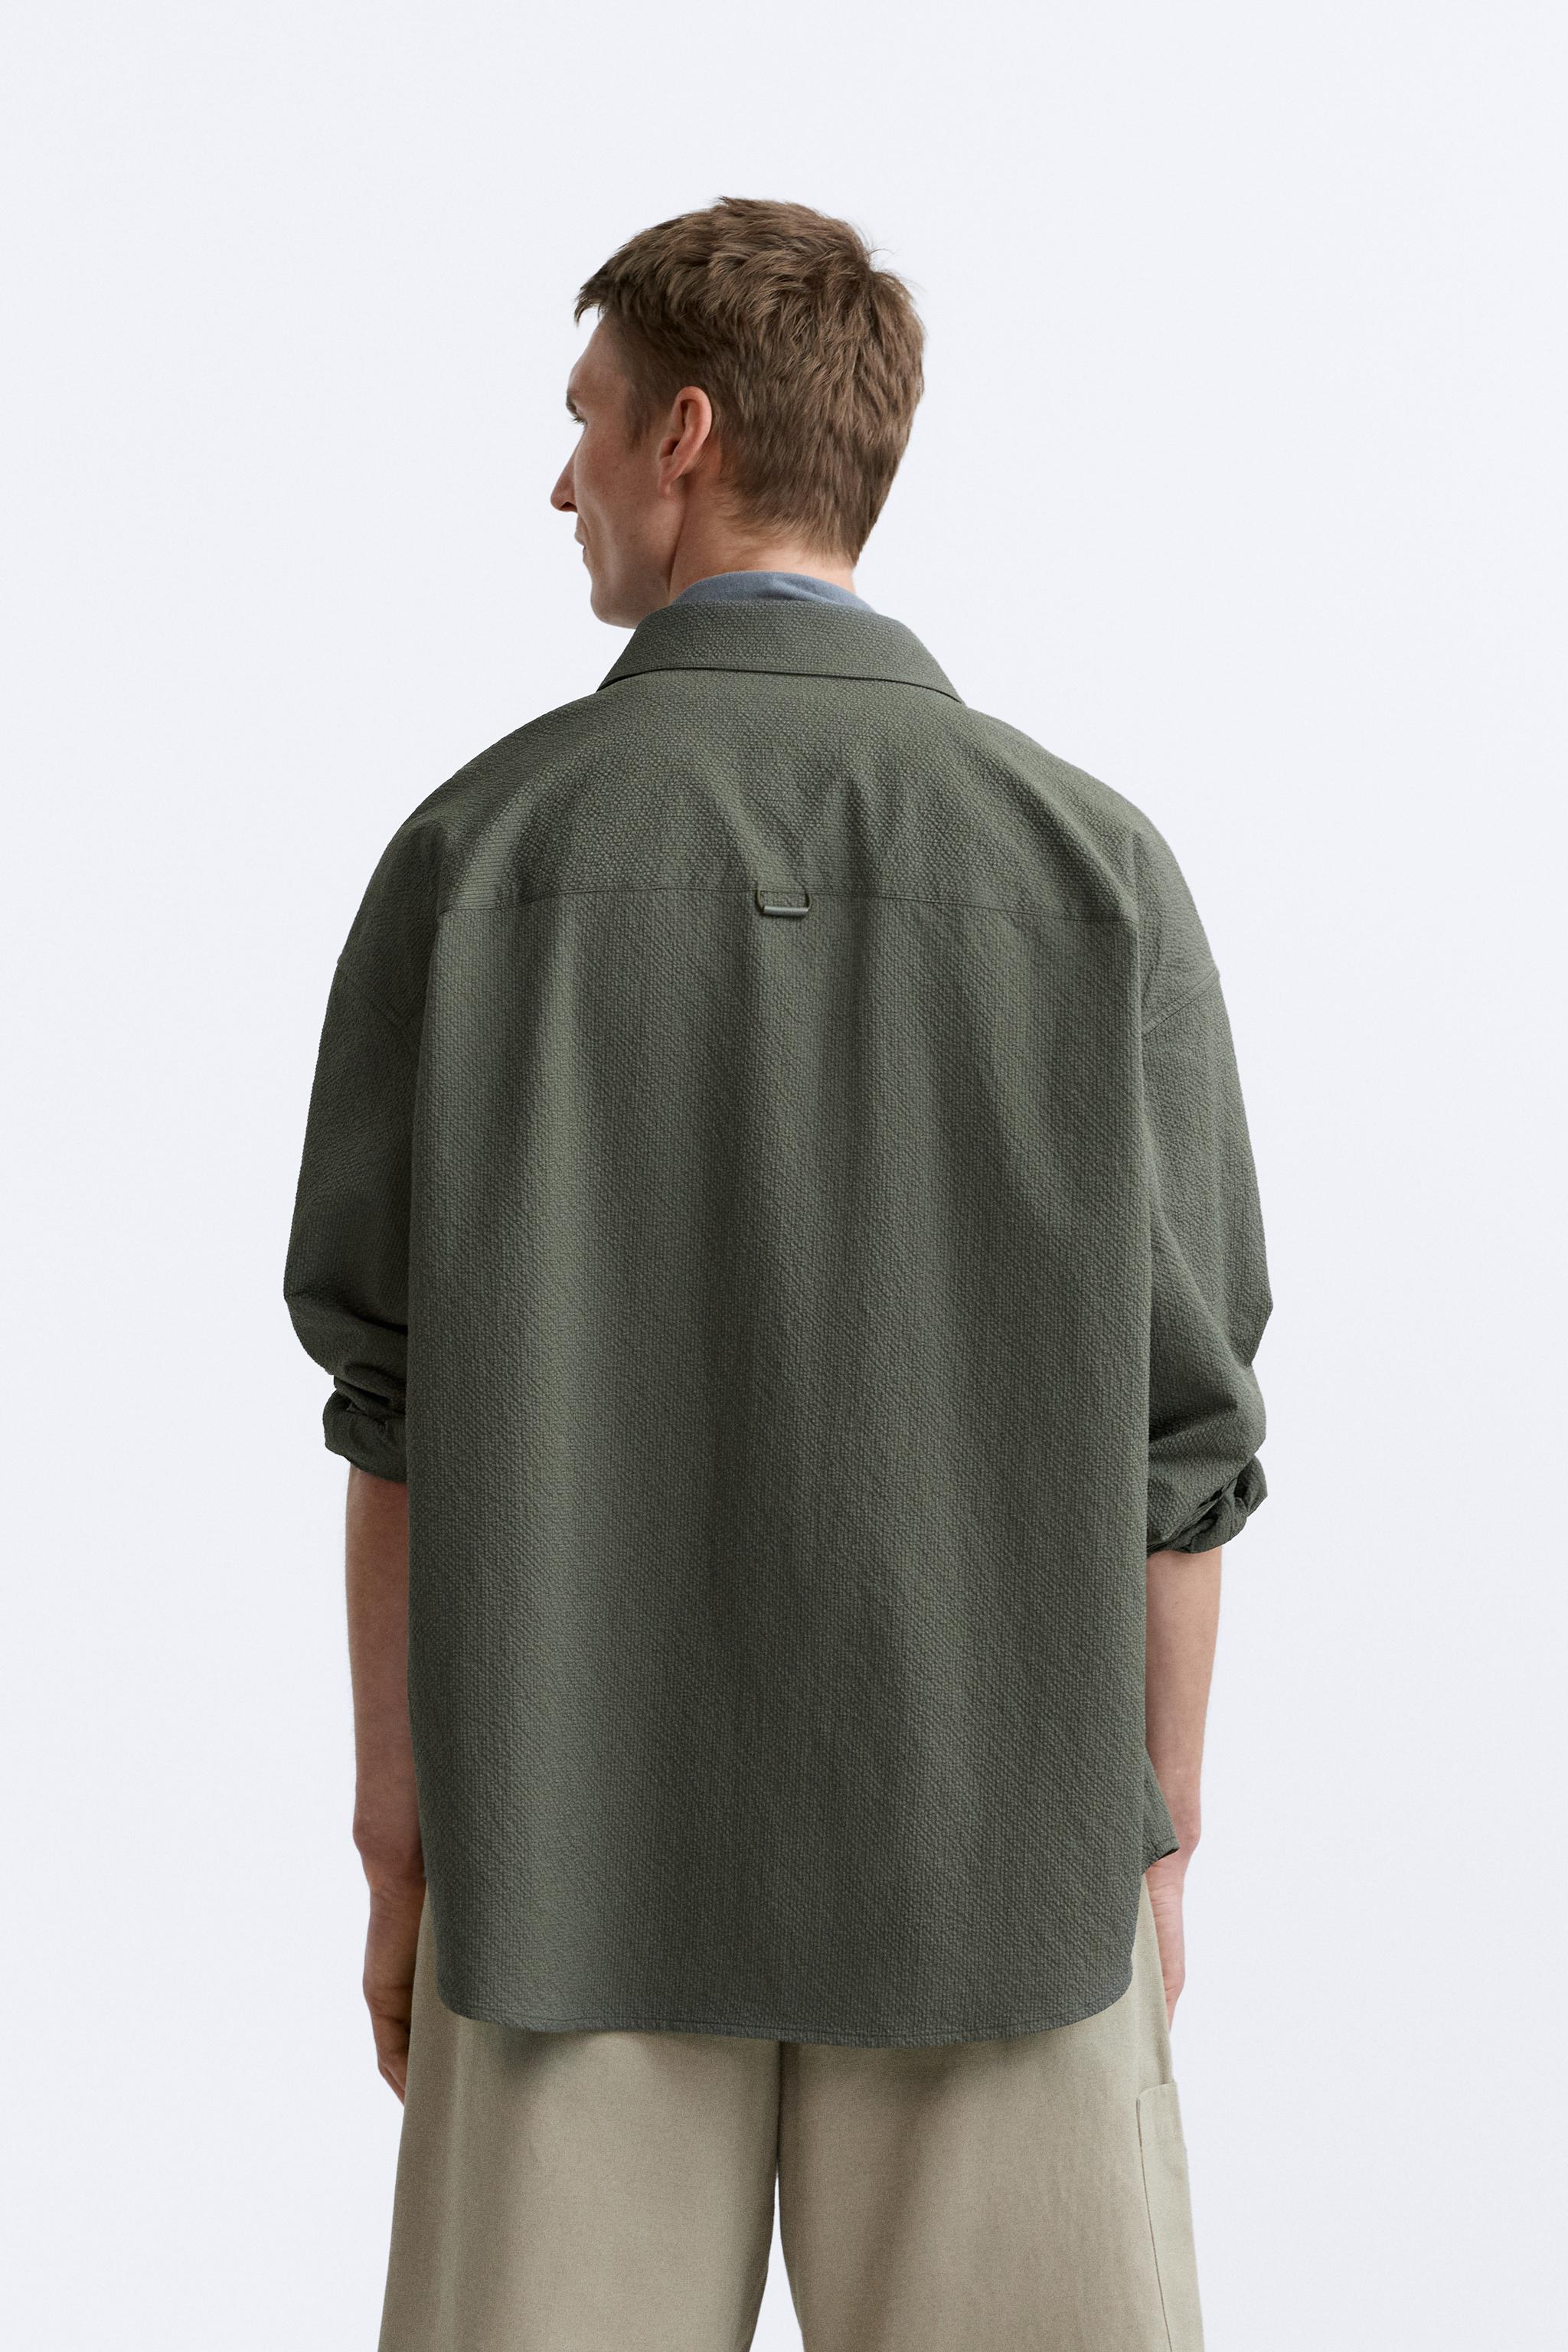 口袋設計泡泡紗襯衫- 綠色| ZARA Taiwan, China / 中國台灣